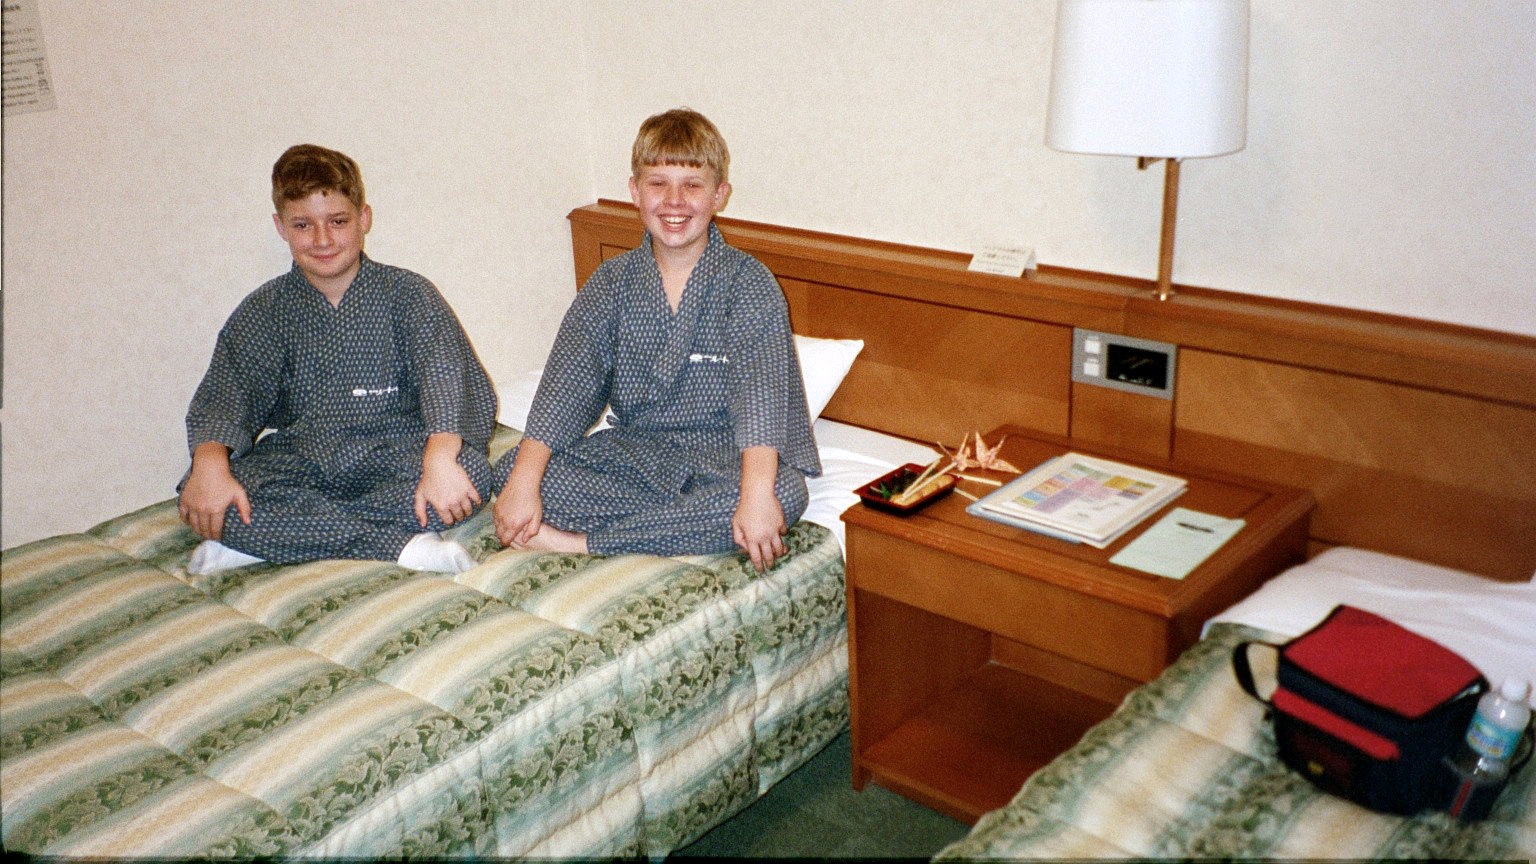 Dalton and Colton in their Kimono's at the Hotel